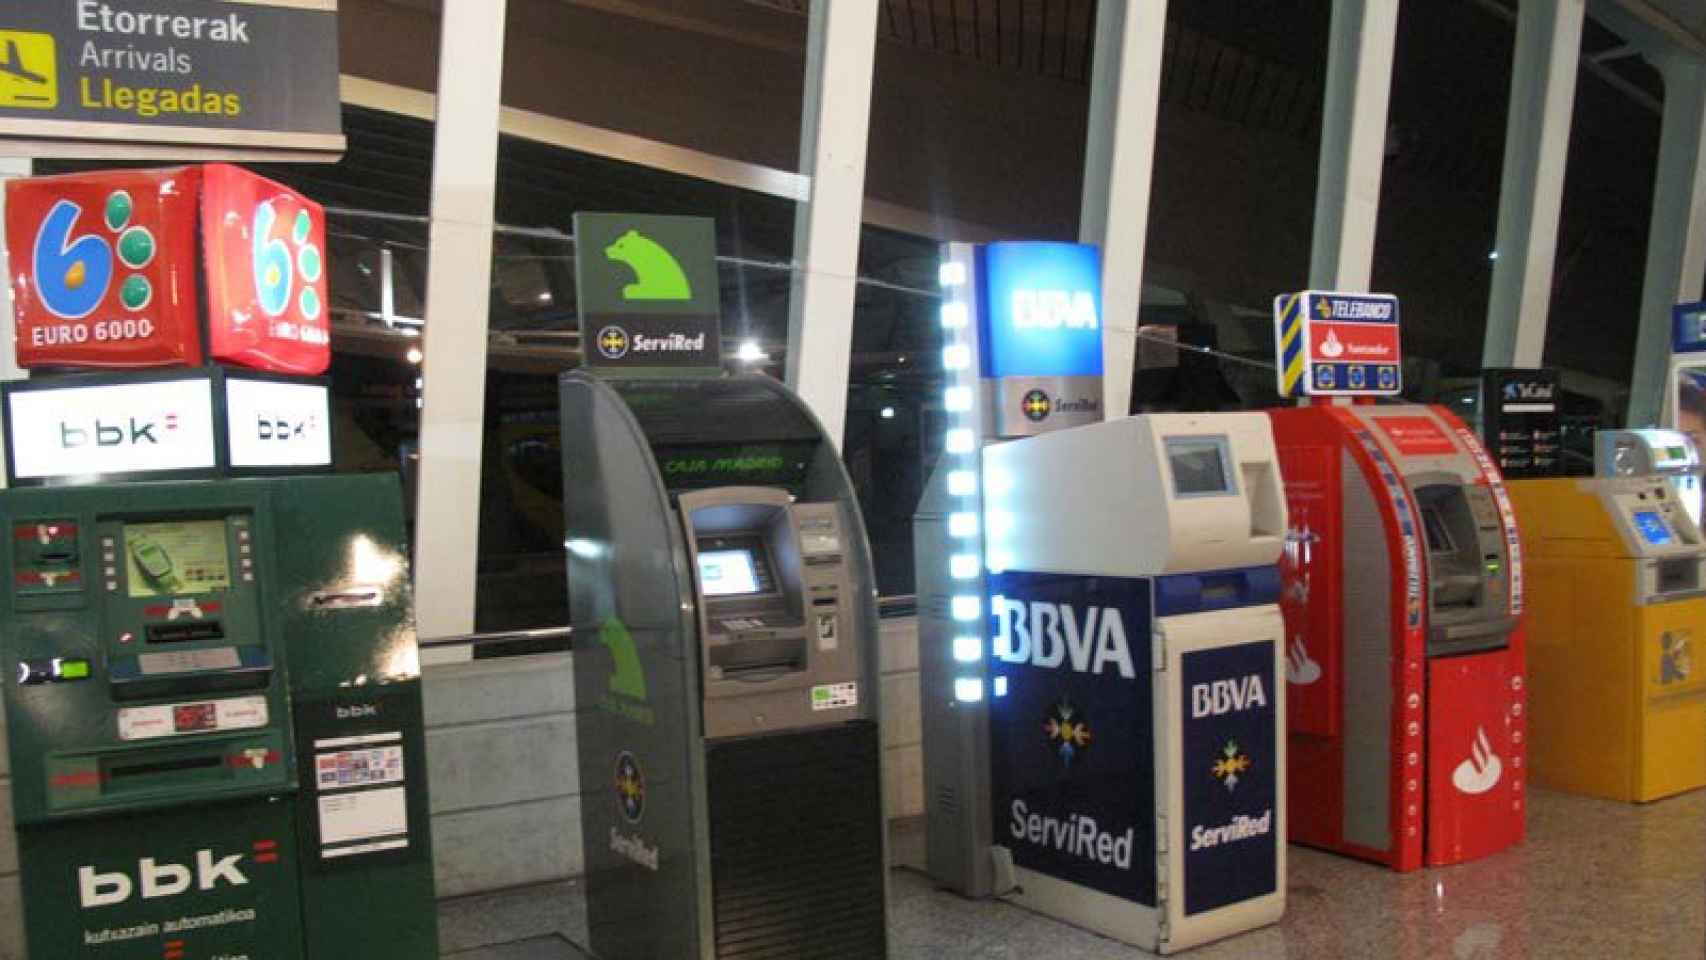 Cajeros automáticos alineados en las instalaciones del aeropuerto de Bilbao